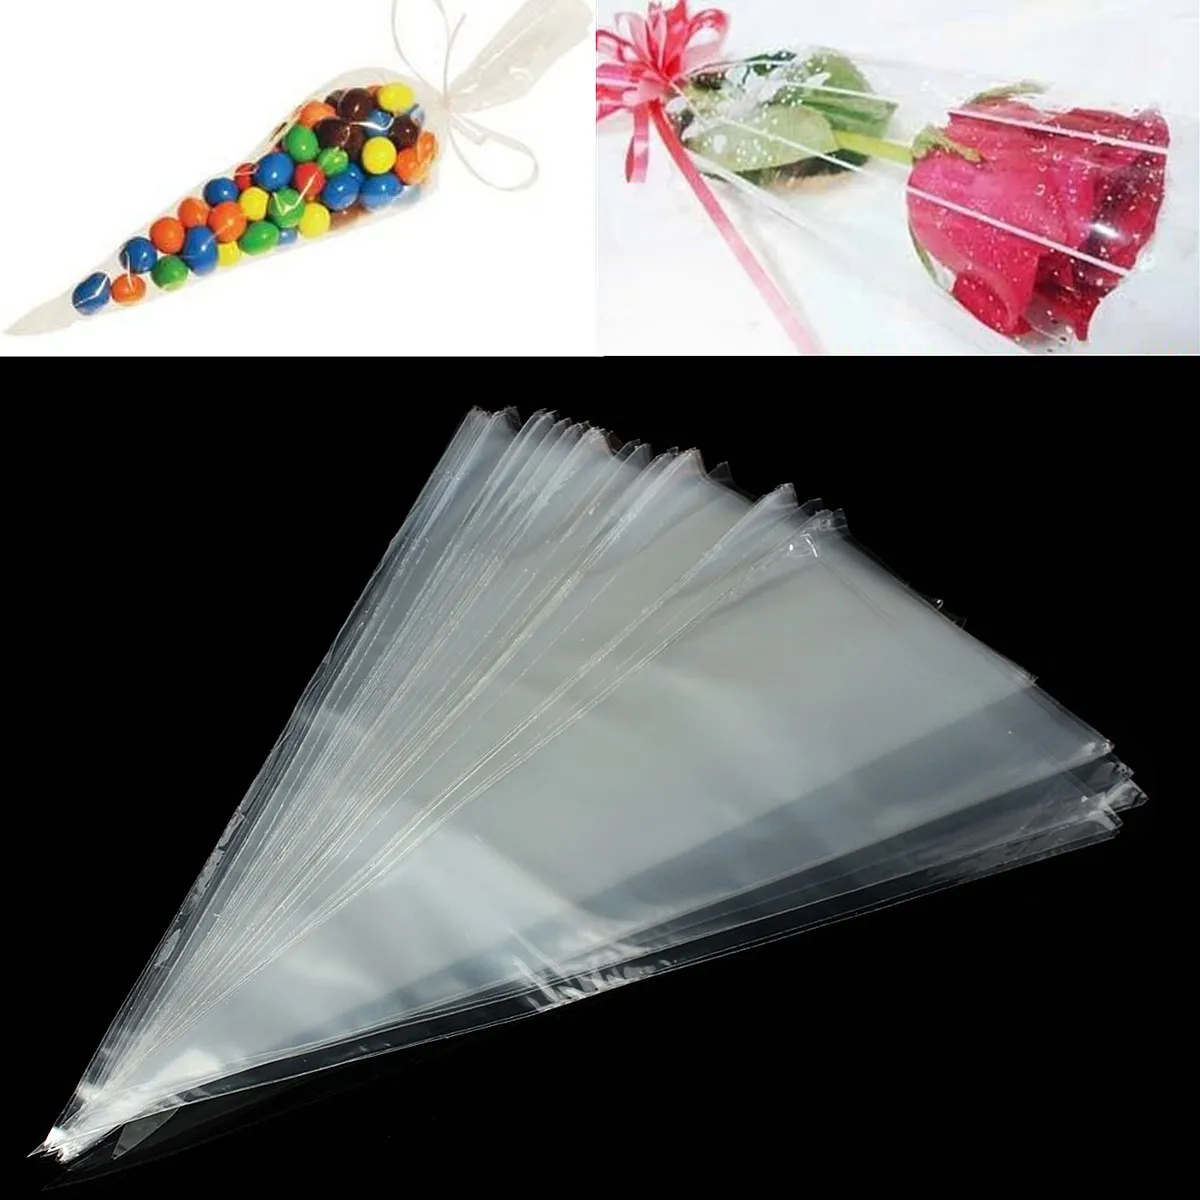 100x прозрачные пластиковые целлофановые пакеты в форме конуса, прозрачный мешок для конфет, упаковка для сладкого сахара, попкорна, цветов, на день рождения, свадьбу